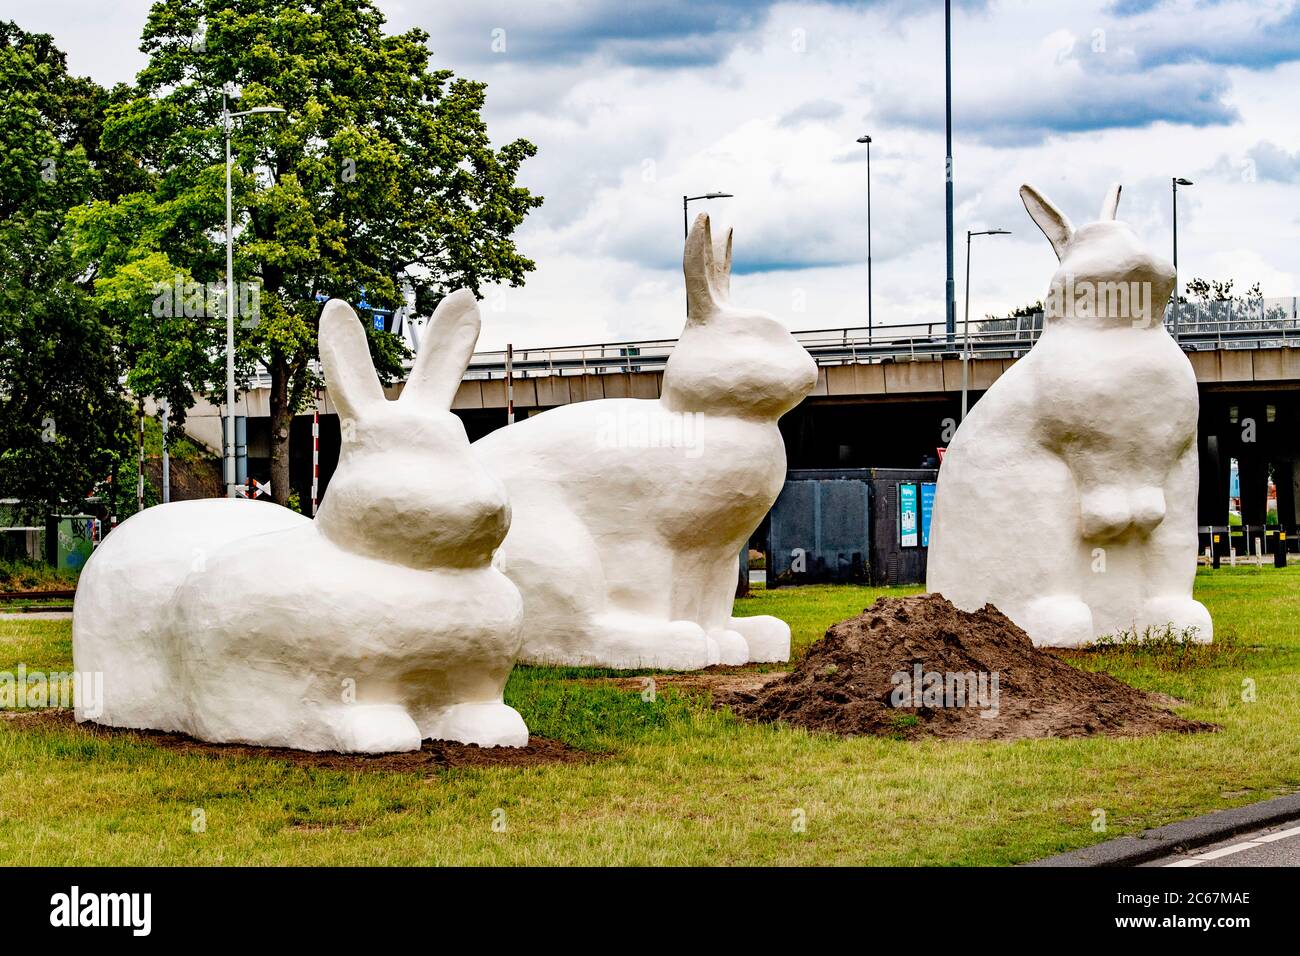 Drei riesige Kaninchenstatuen (Berm Bunnies) bilden einen Blickfang auf der Schnellfahrradroute von Amsterdam nach Zaanstad im Hafengebiet von Amsterdam. Stockfoto